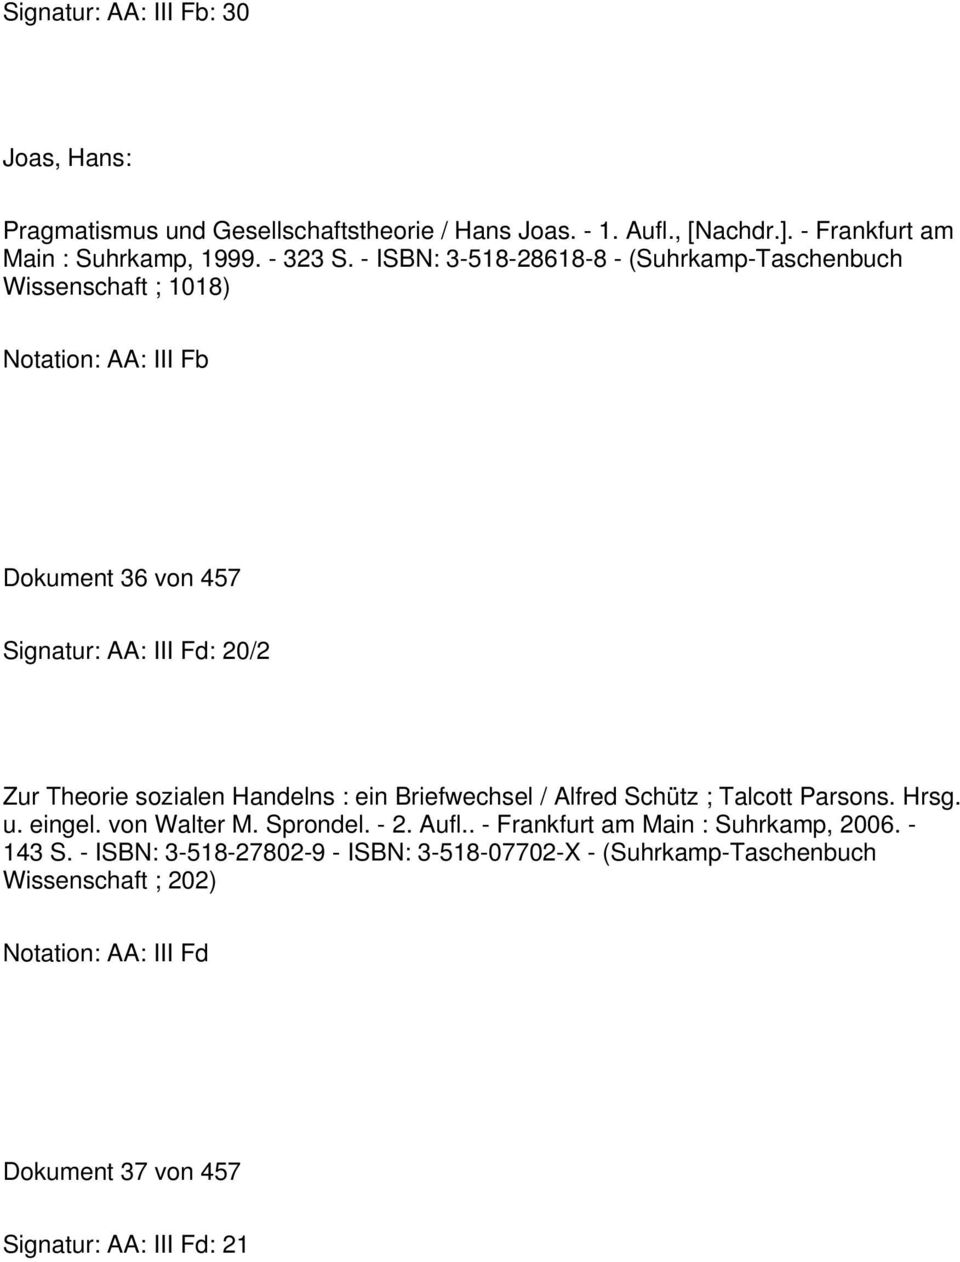 Handelns : ein Briefwechsel / Alfred Schütz ; Talcott Parsons. Hrsg. u. eingel. von Walter M. Sprondel. - 2. Aufl.. - Frankfurt am Main : Suhrkamp, 2006.